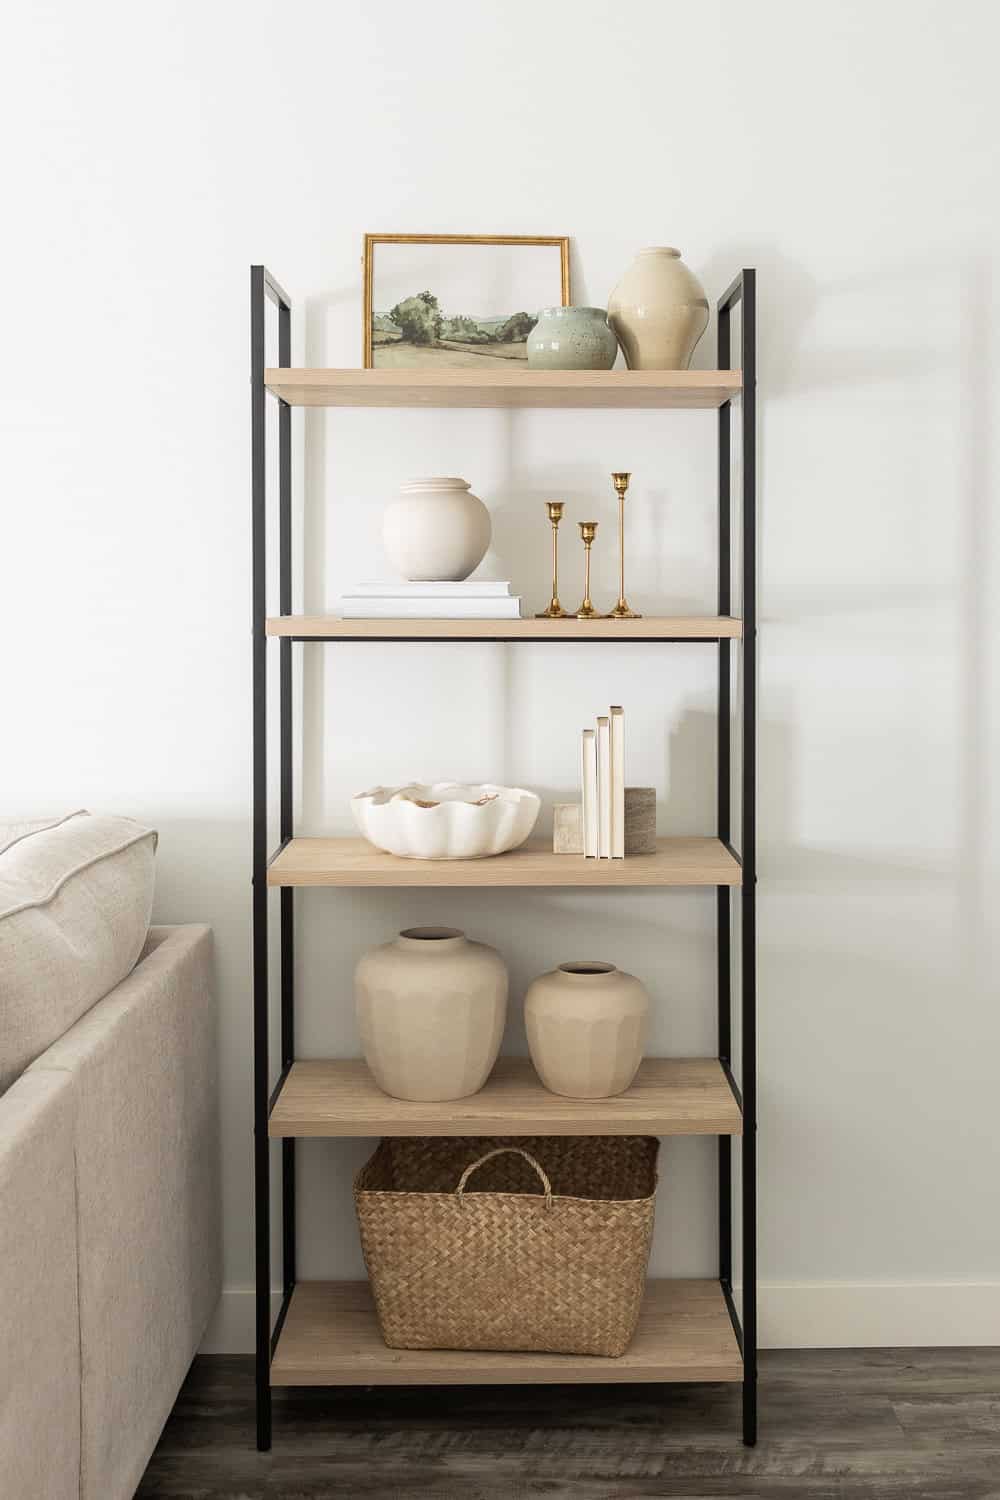 styling shelves